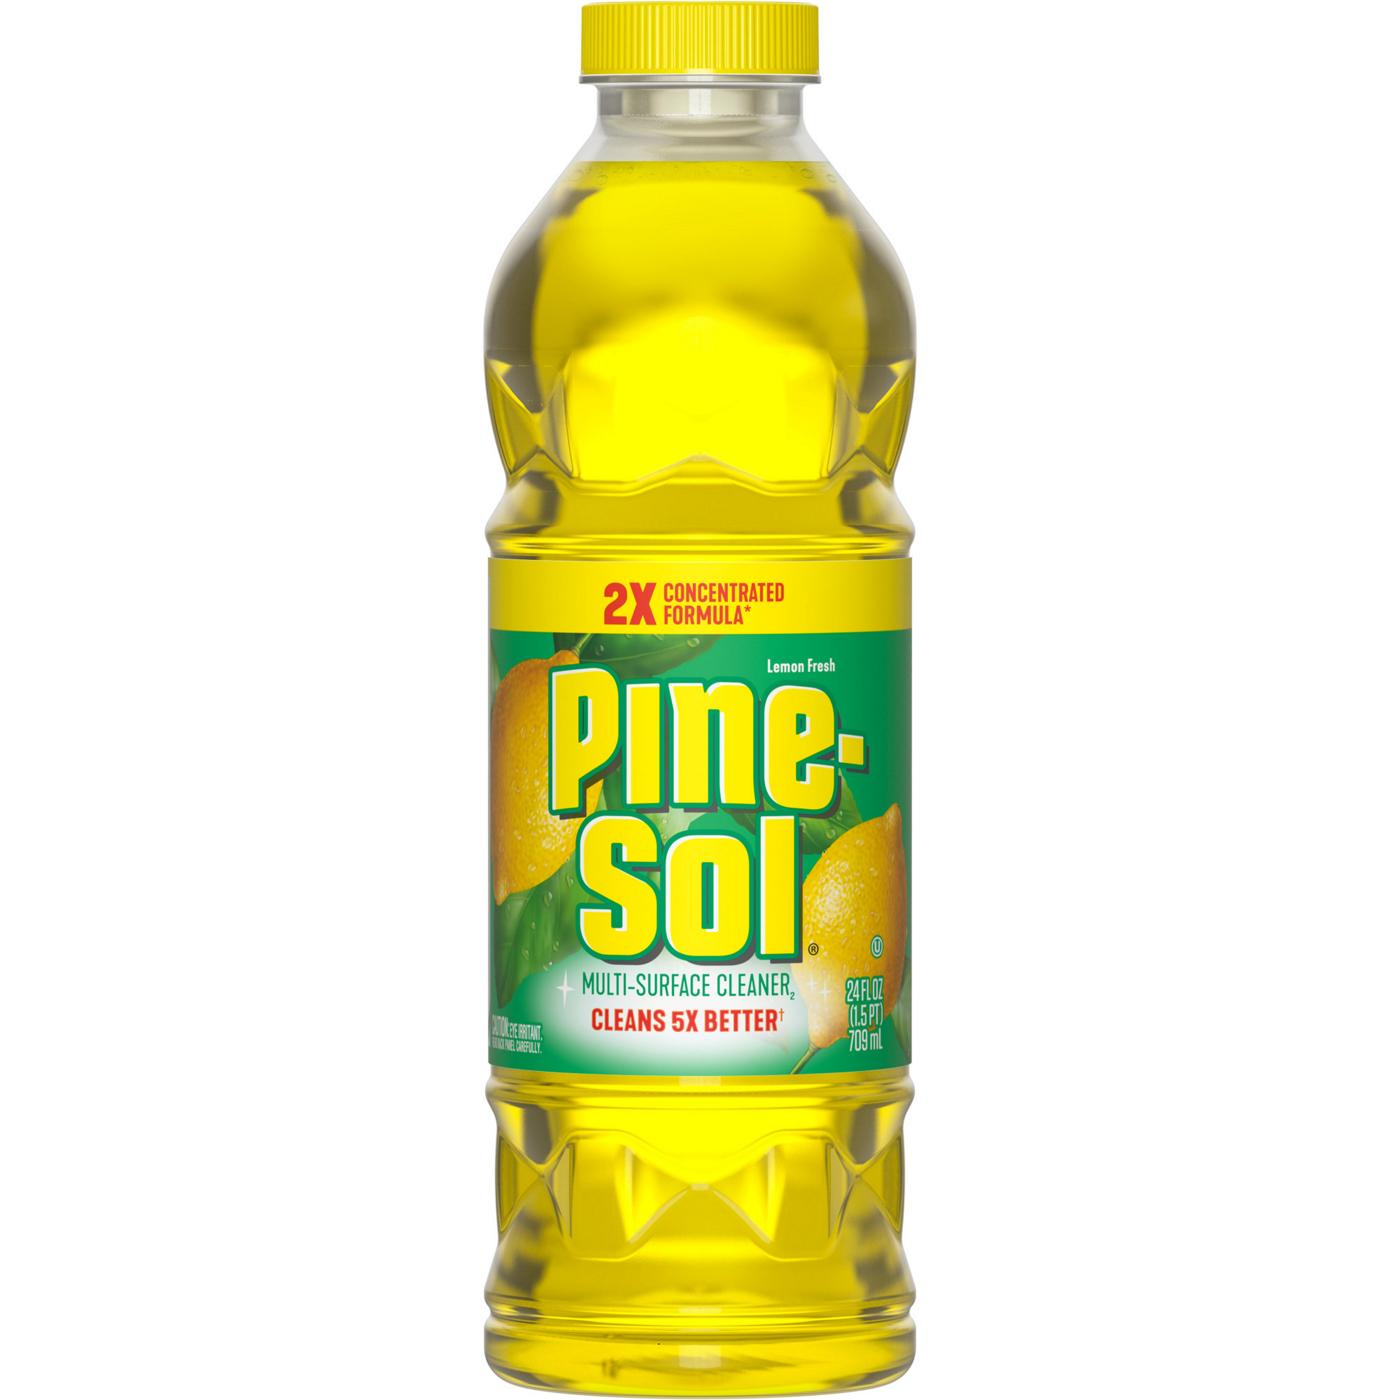 Pine-Sol Lemon Fresh Multi-Surface Cleaner; image 1 of 9